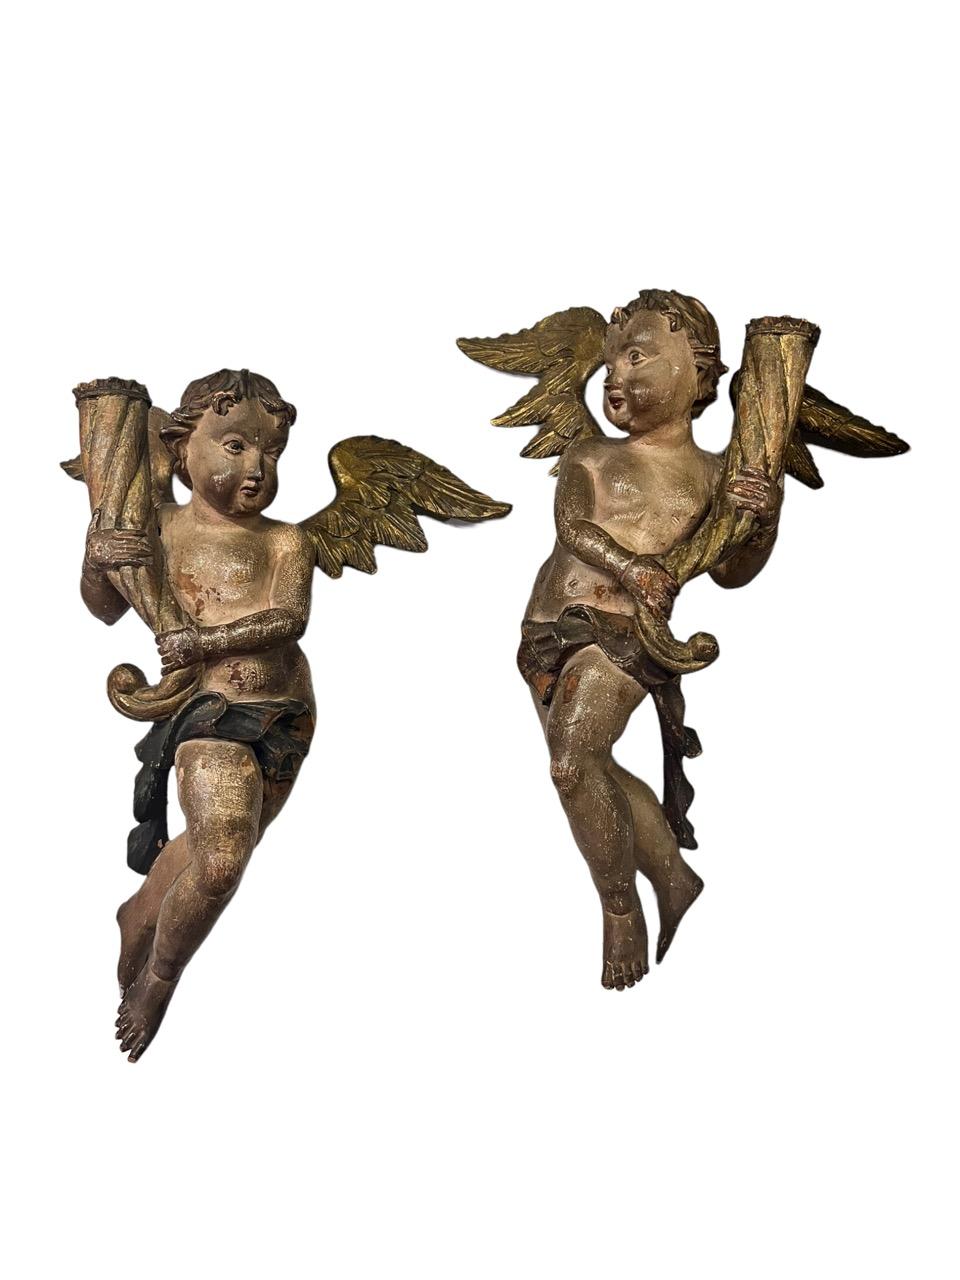 Dieses exquisite Paar italienischer Kerzenständer aus dem 16. Jahrhundert ist ein Zeugnis der Kunstfertigkeit und Handwerkskunst der Renaissance. Die sorgfältig aus Holz geschnitzten und mit opulenter Goldvergoldung und lebhaften polychromen Details